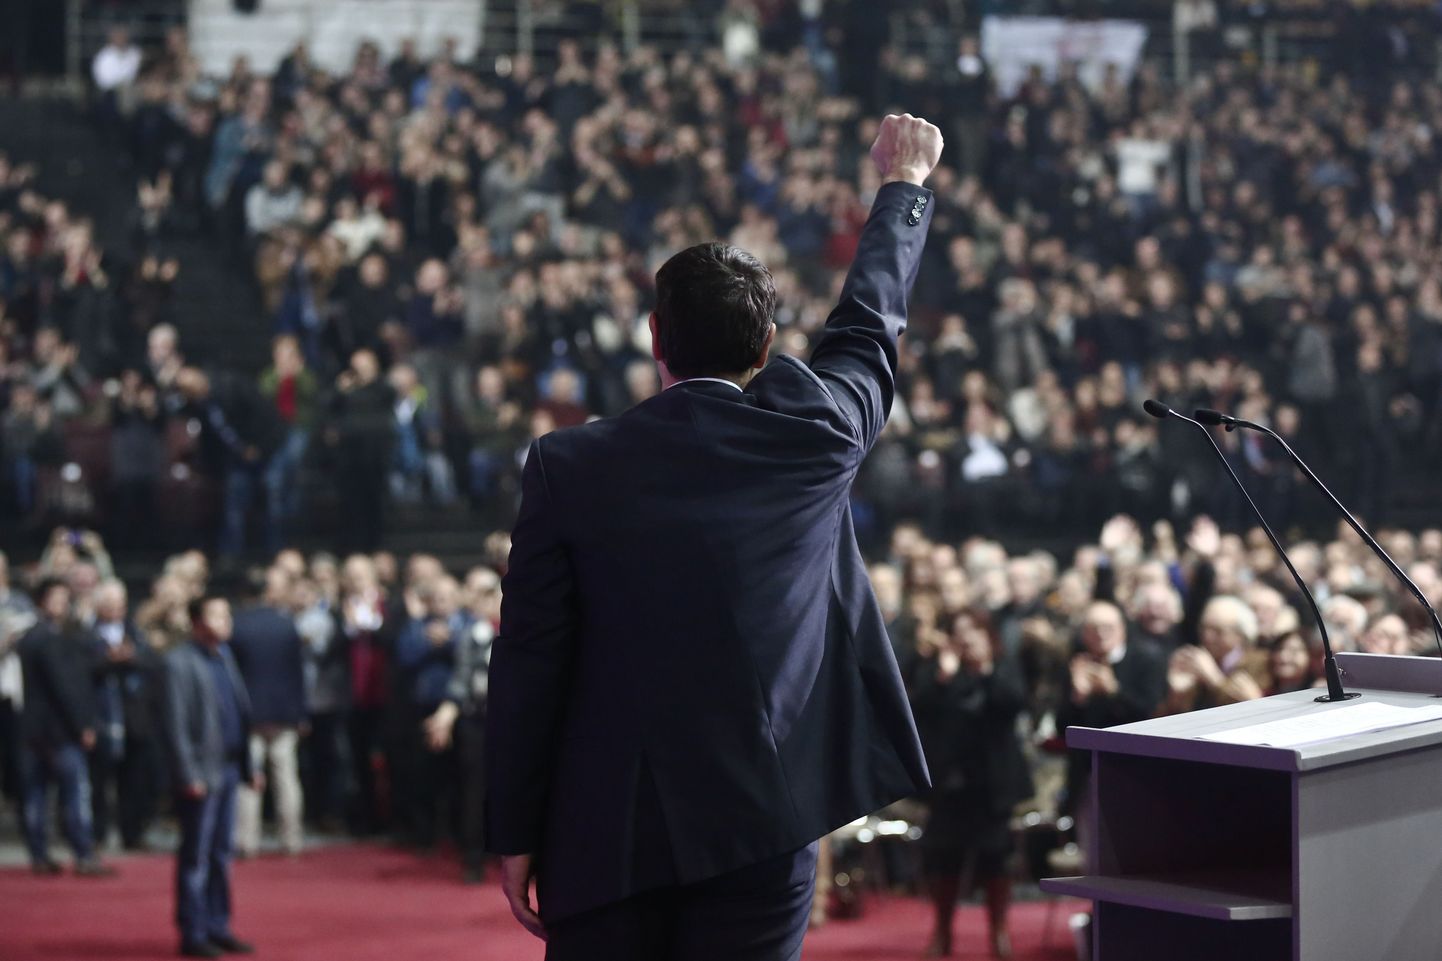 Kreeka valimised võitnud Syriza juht Alexis Tsipras partei kongressil Ateenas.